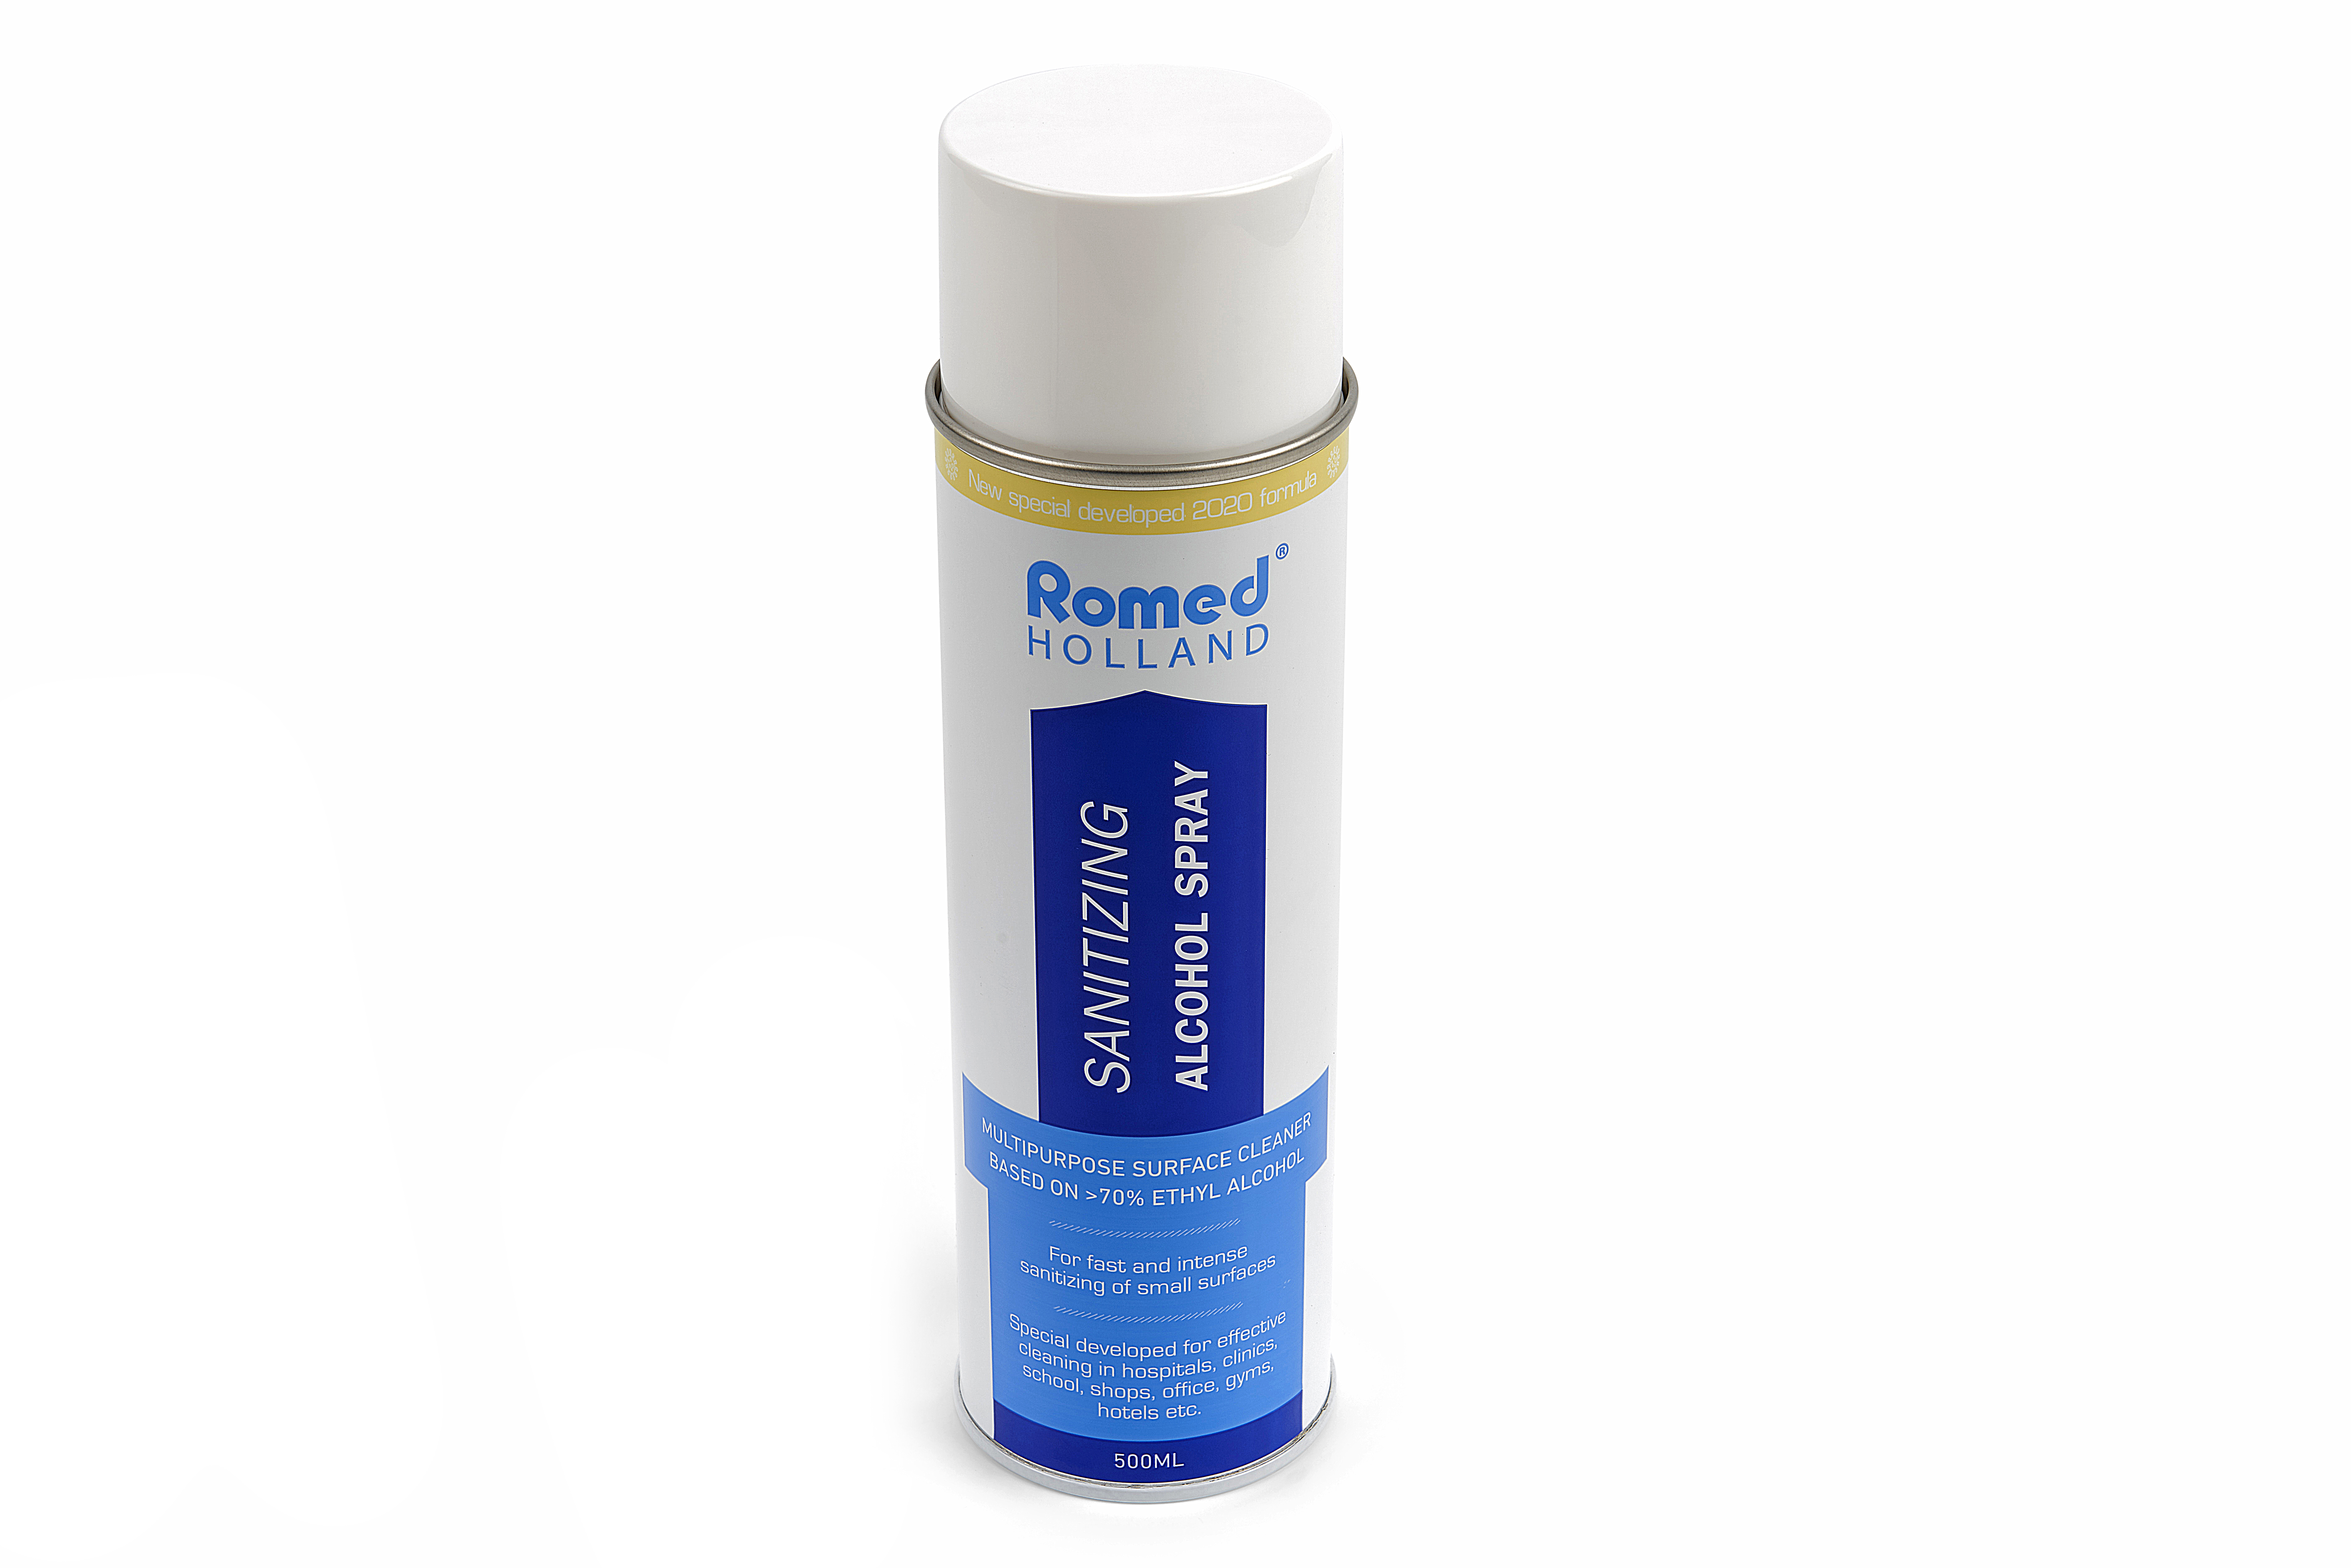 COV19-SPRAY Spray desinfetante Romed, para desinfeção rápida e intensa de pequenas superfícies. 12 aerossóis, 500 ml, por caixa de envio.